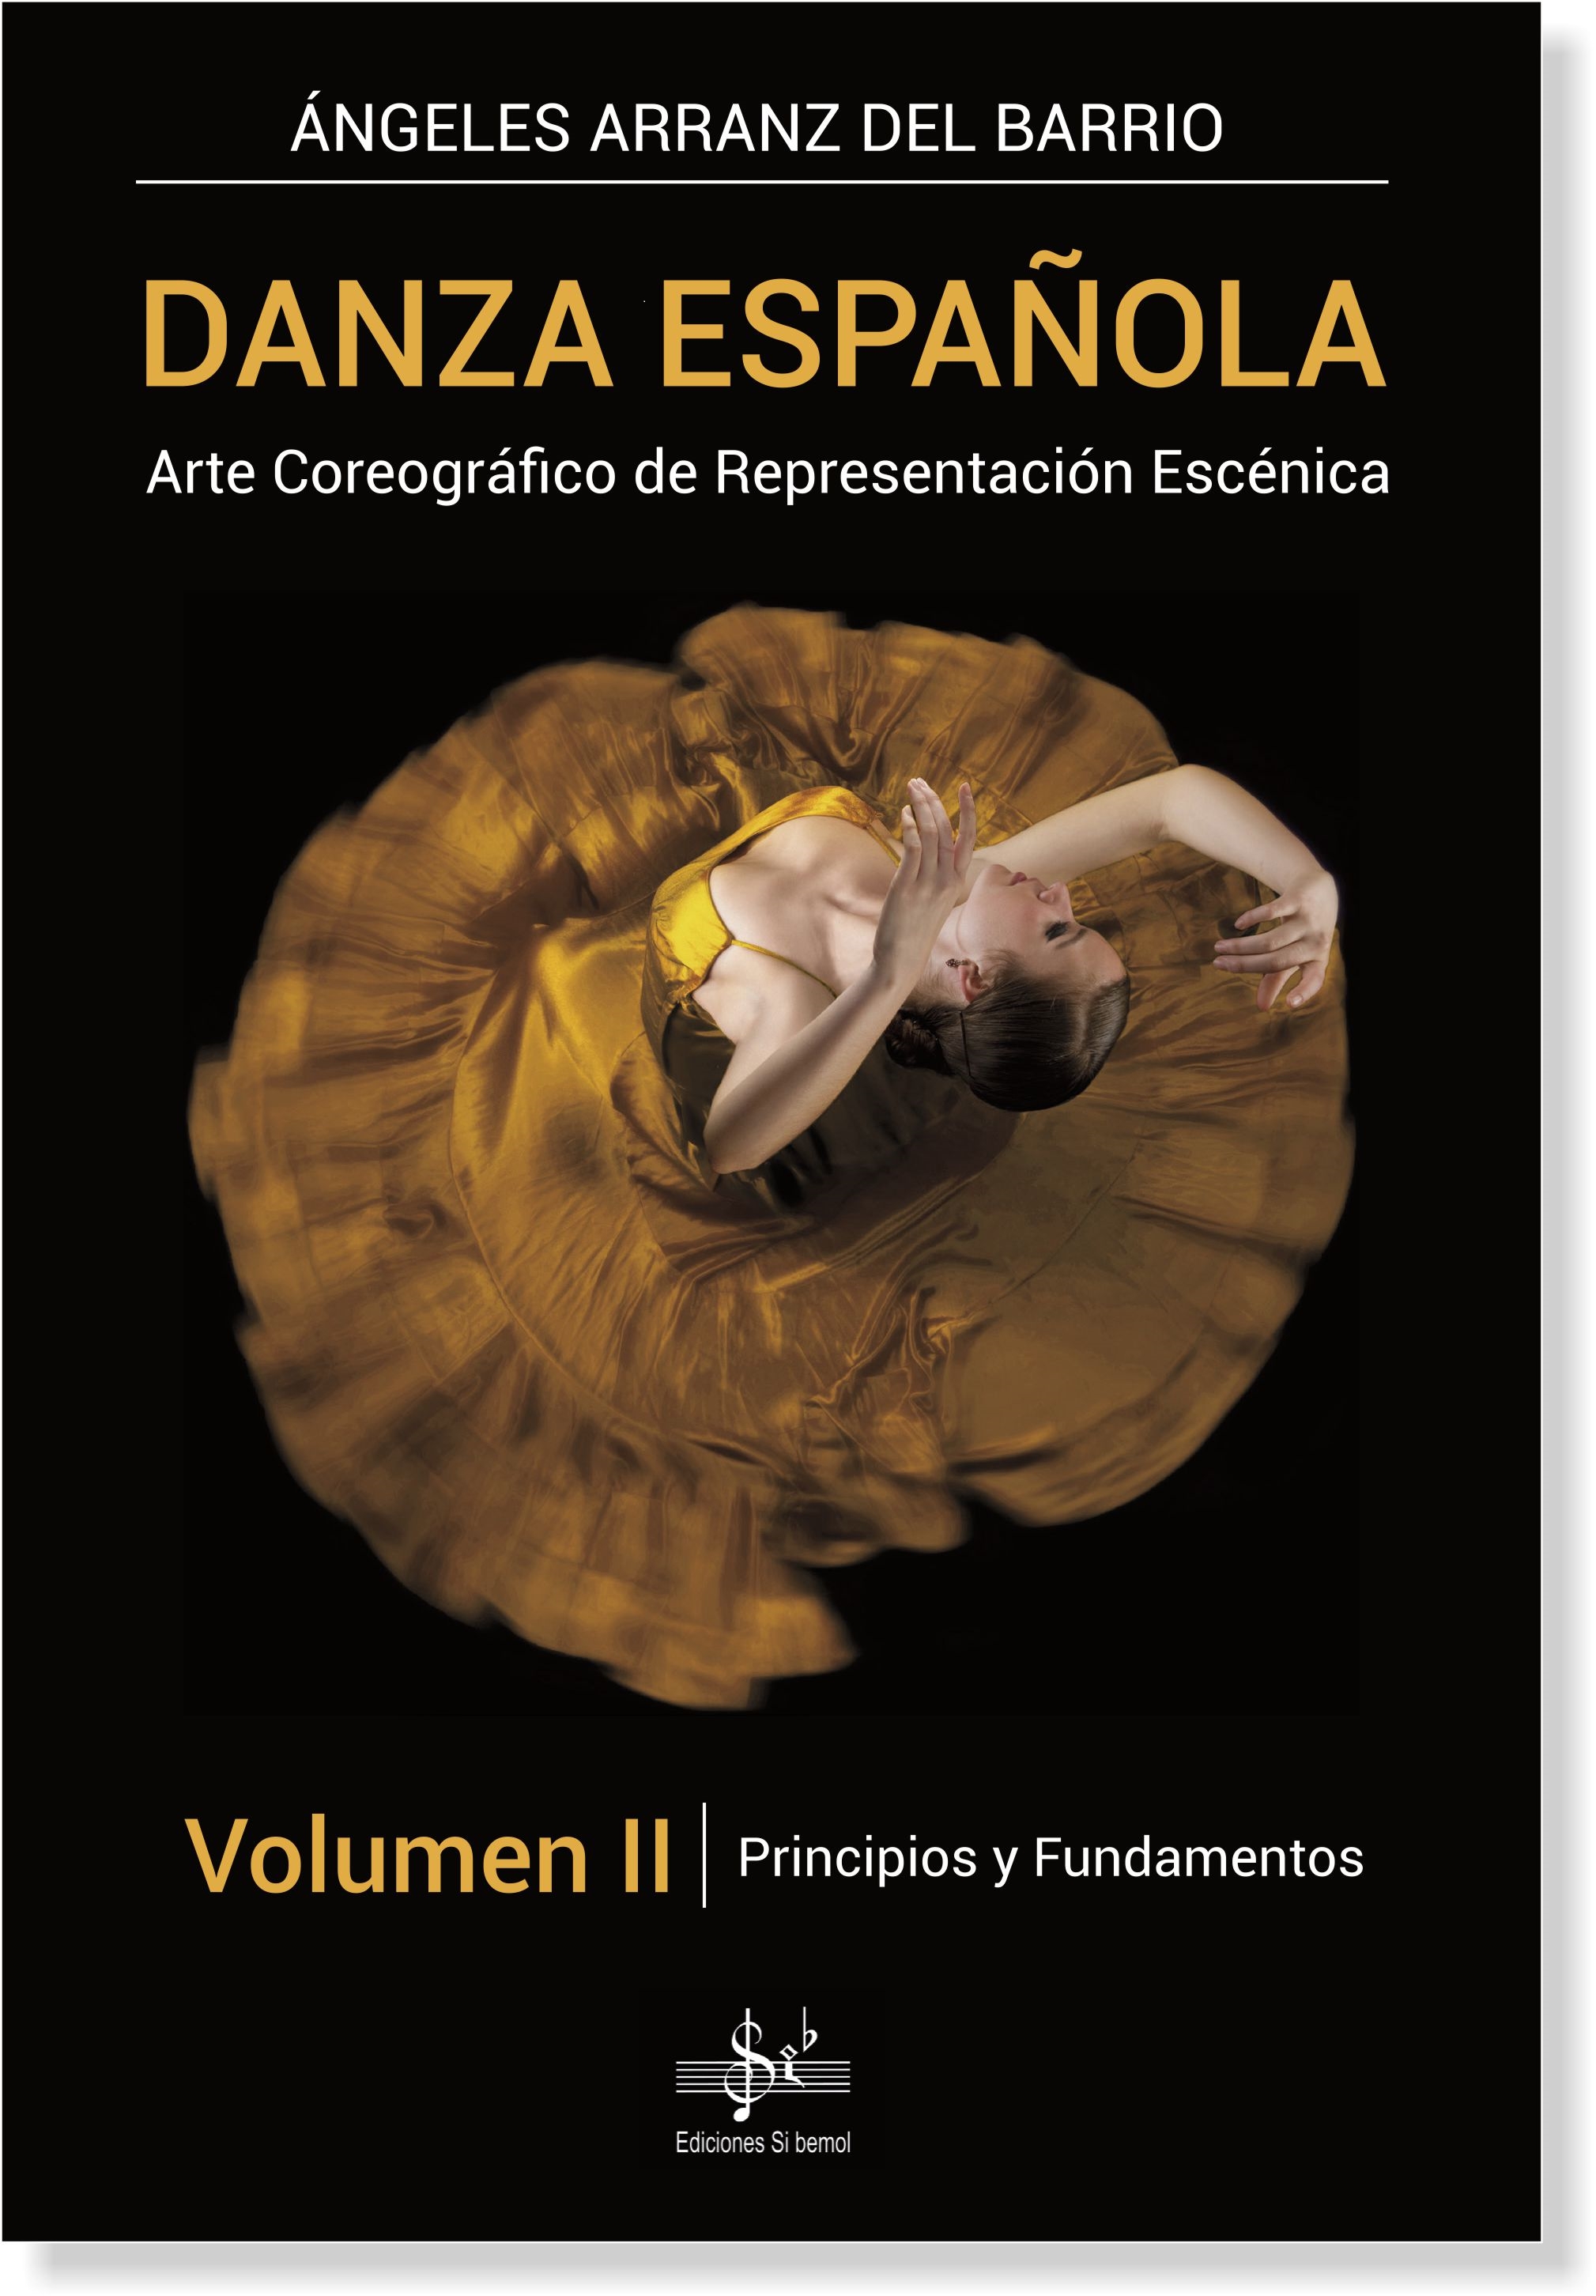 DANZA ESPAÑOLA Vol. 2